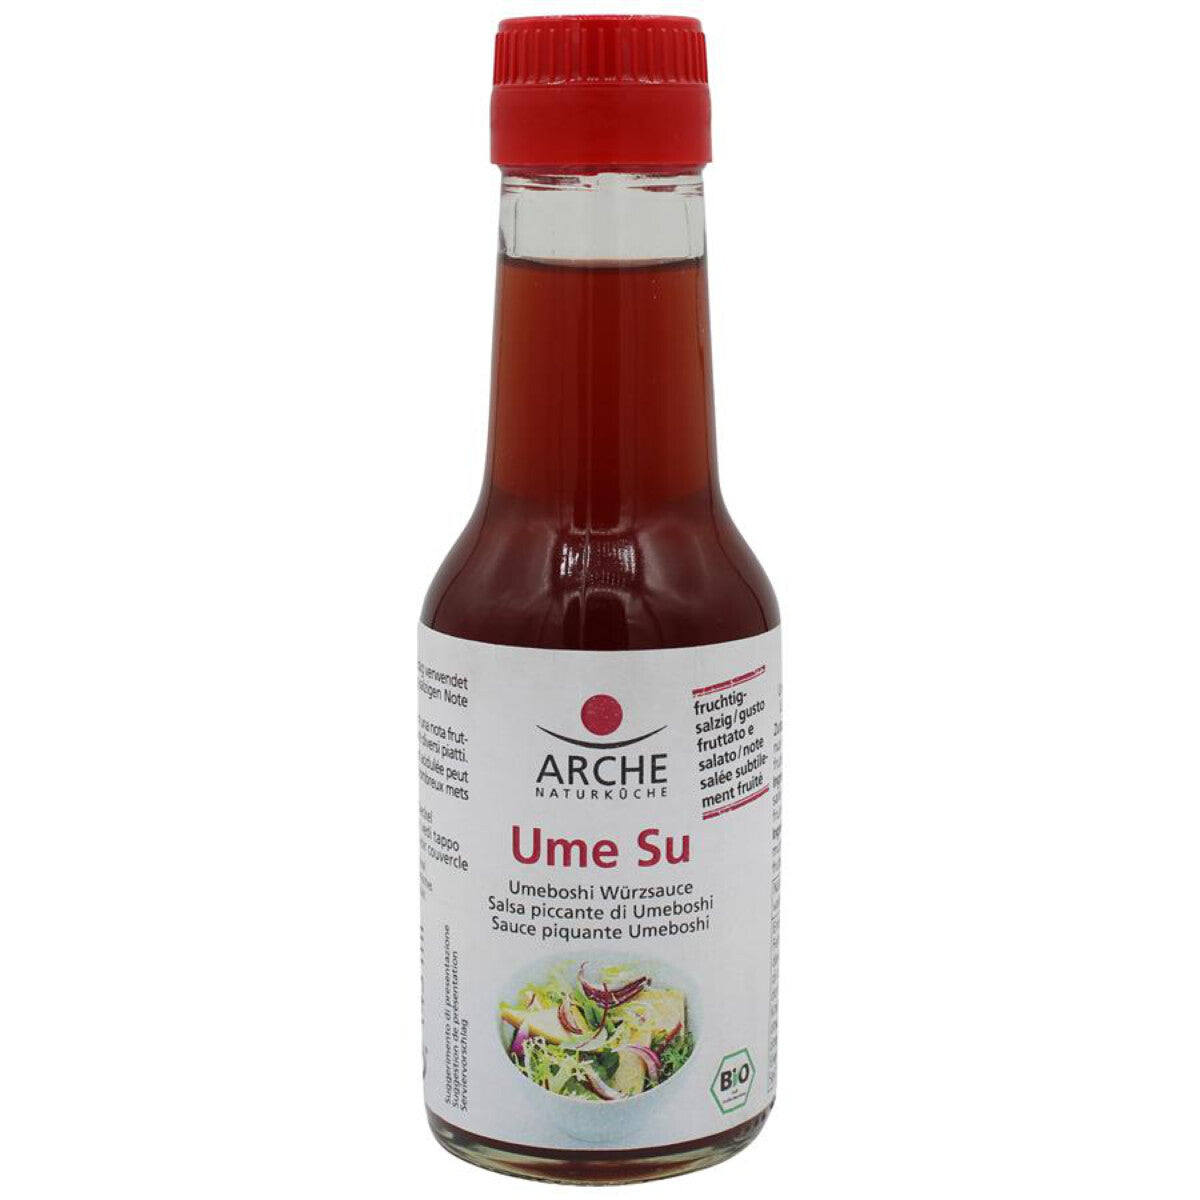 ARCHE Ume Su Umeboshi-Würzsauce - 145 ml